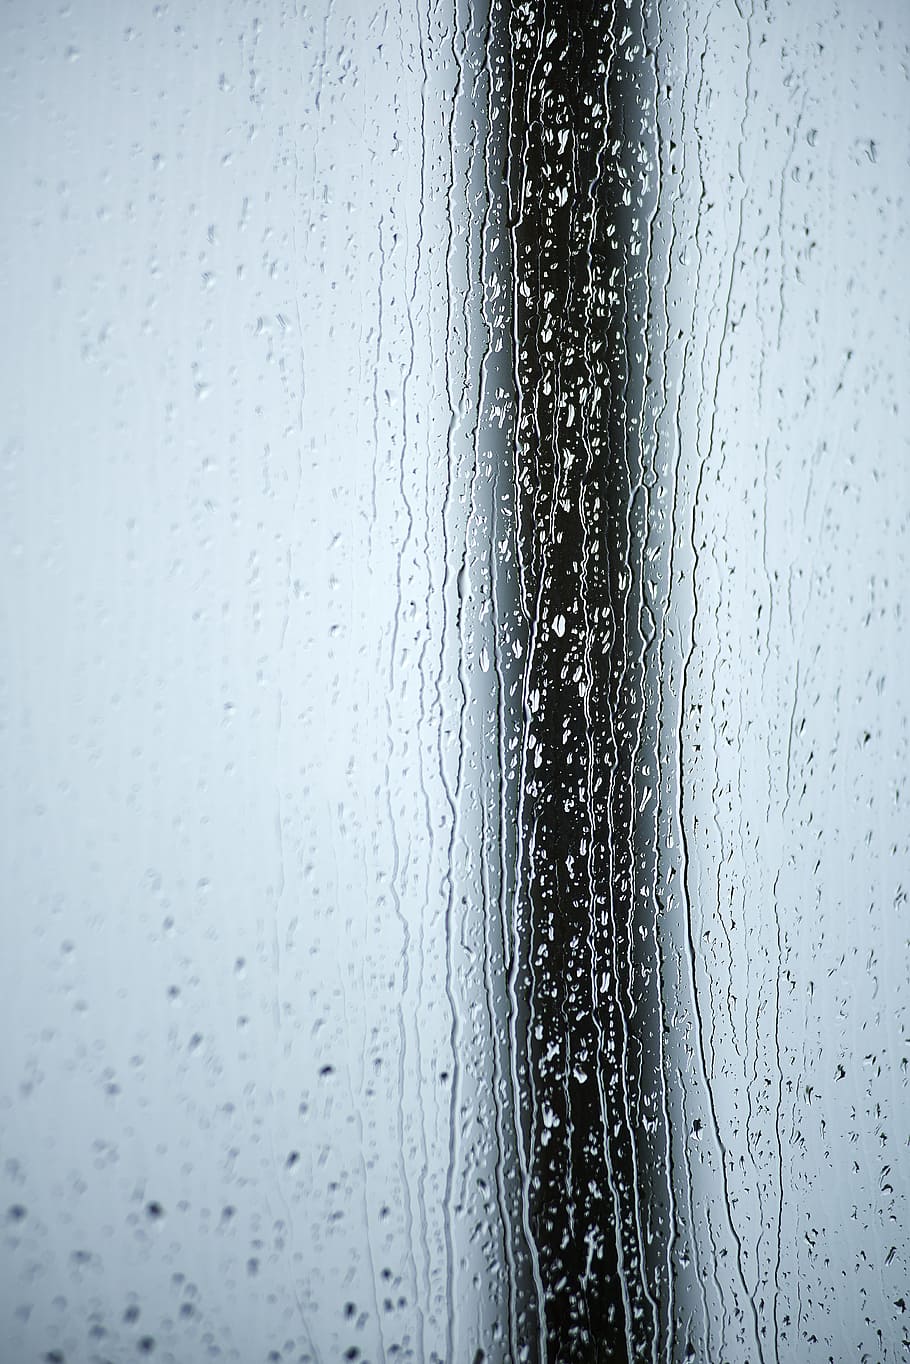 Rintik Hujan, Setetes Air, Menitik, hujan, air, tutup, basah, manik-manik, suasana hati, cakram